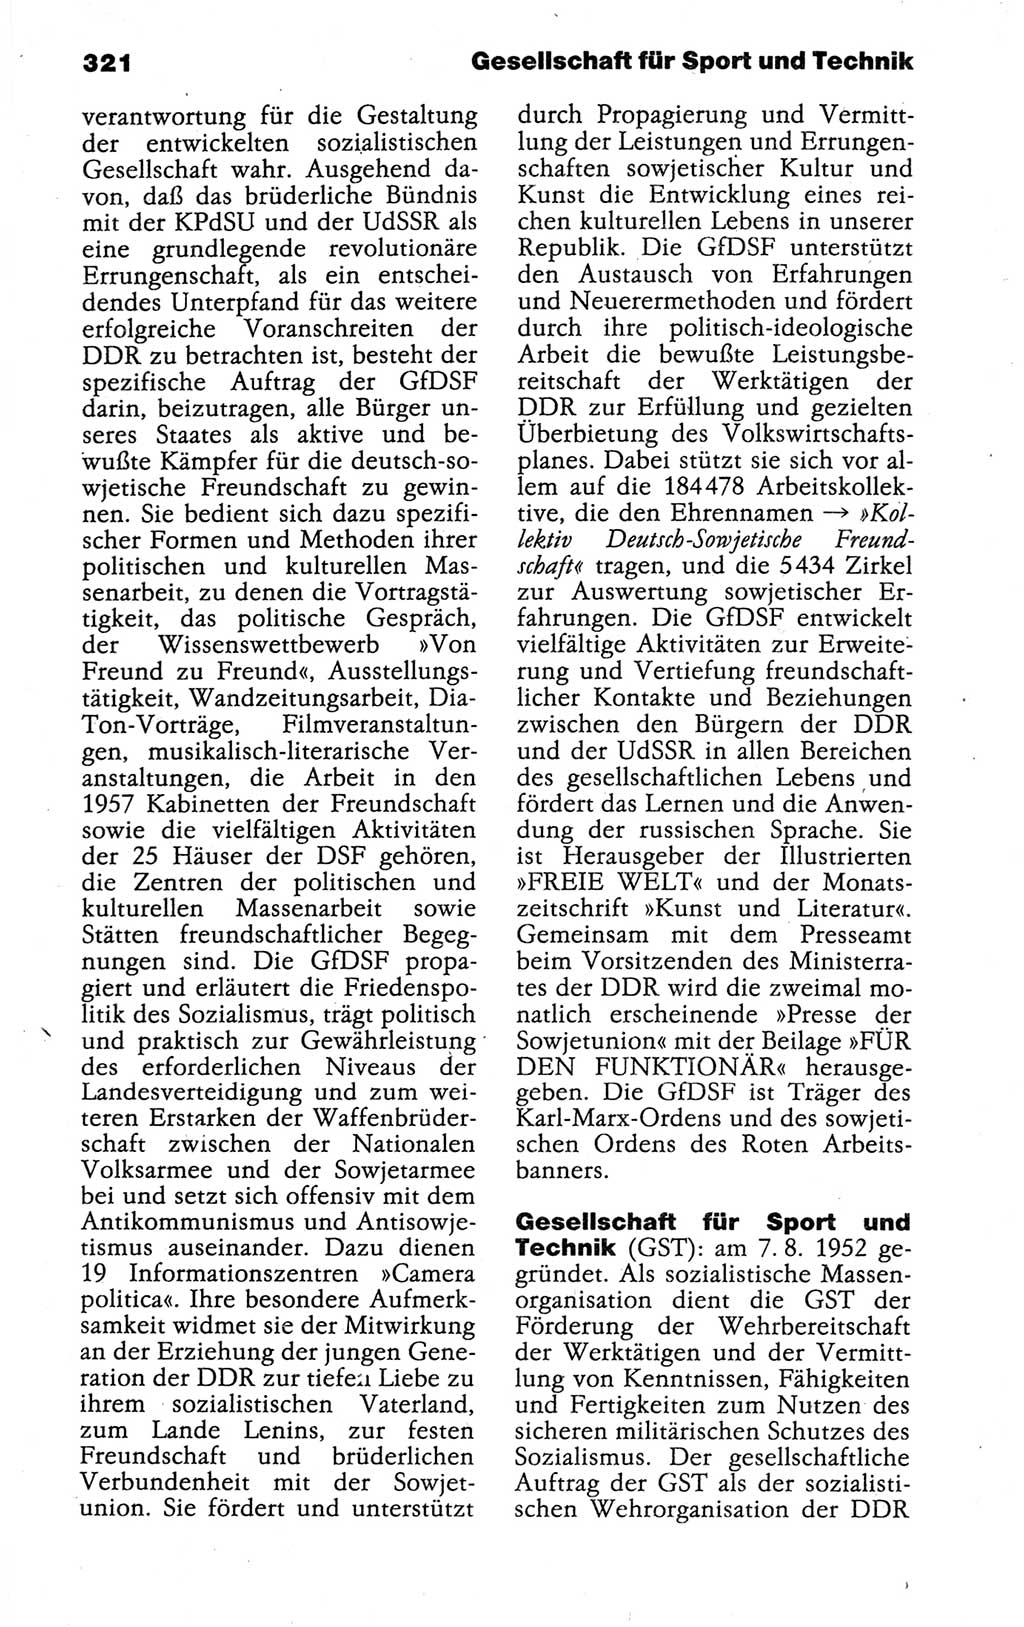 Kleines politisches Wörterbuch [Deutsche Demokratische Republik (DDR)] 1988, Seite 321 (Kl. pol. Wb. DDR 1988, S. 321)